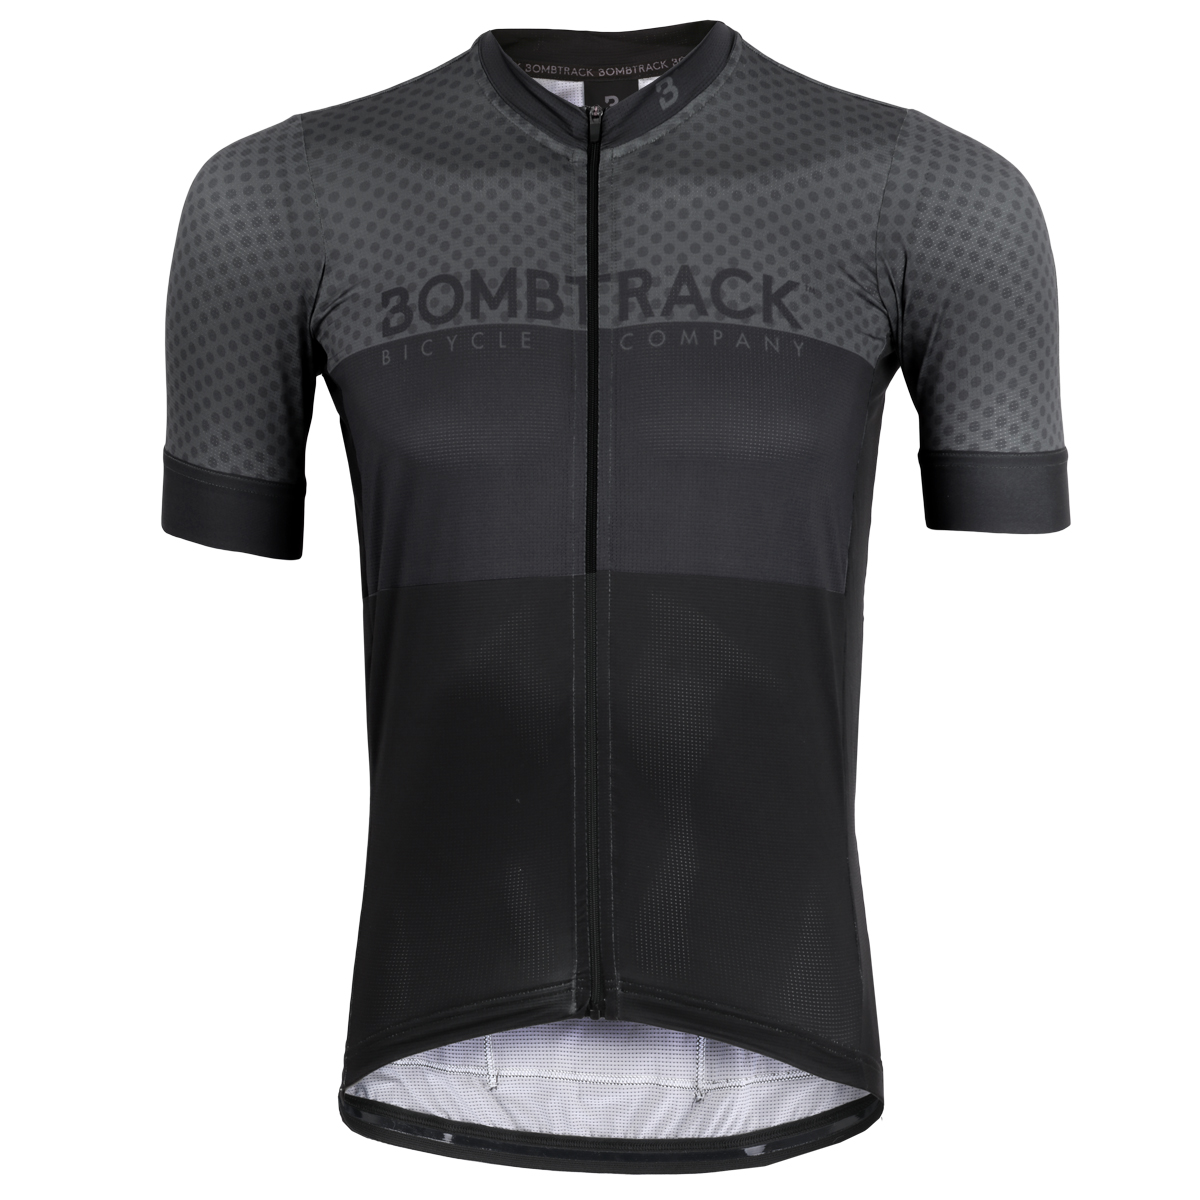 Productfoto van Bombtrack KONG Jersey - black/grey